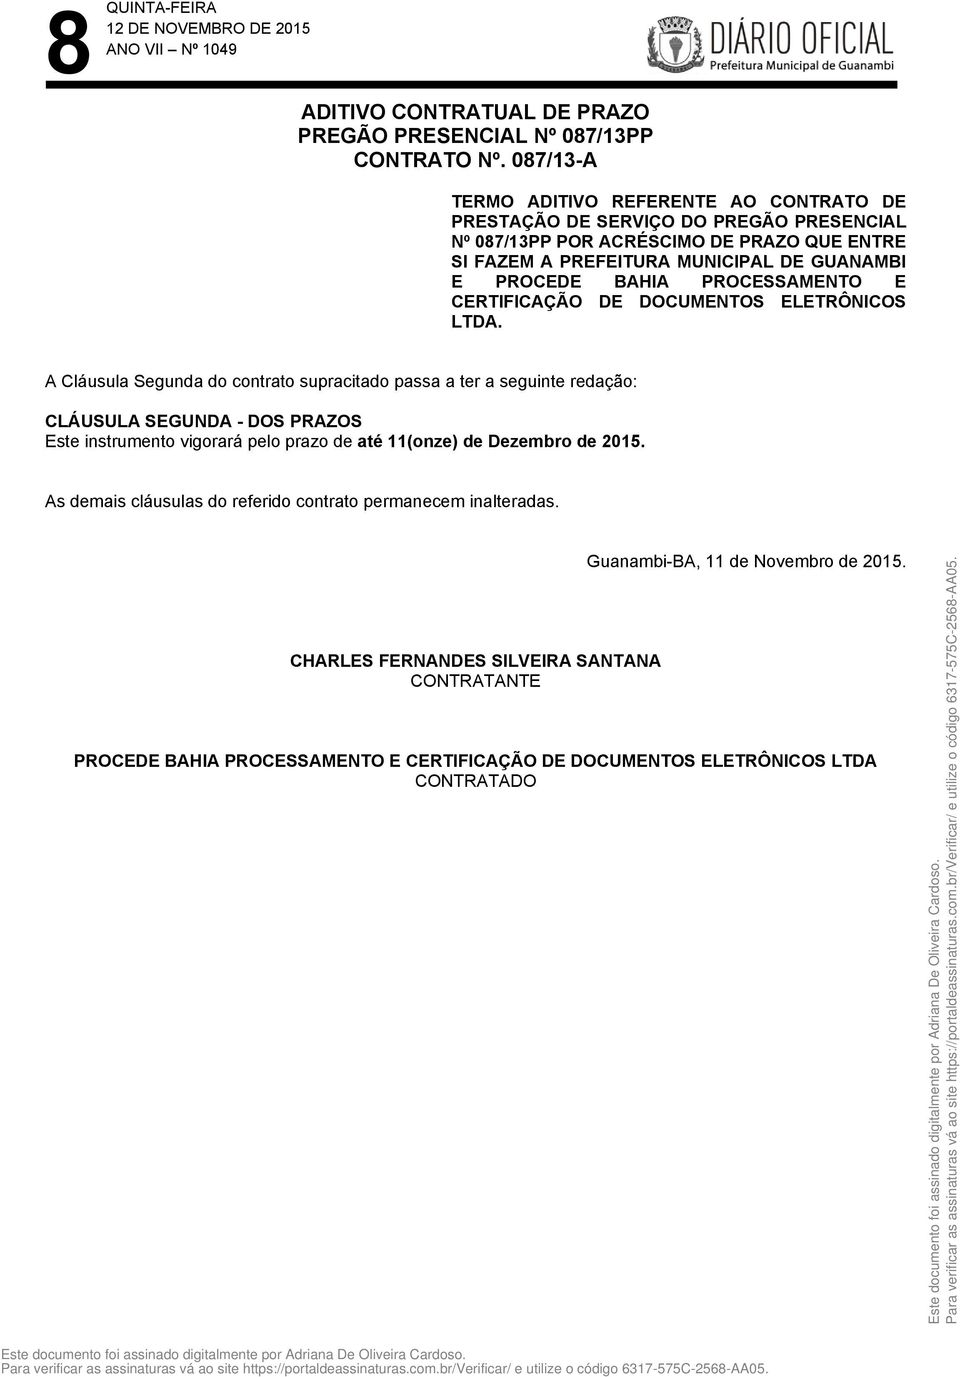 MUNICIPAL DE GUANAMBI E PROCEDE BAHIA PROCESSAMENTO E CERTIFICAÇÃO DE DOCUMENTOS ELETRÔNICOS LTDA.